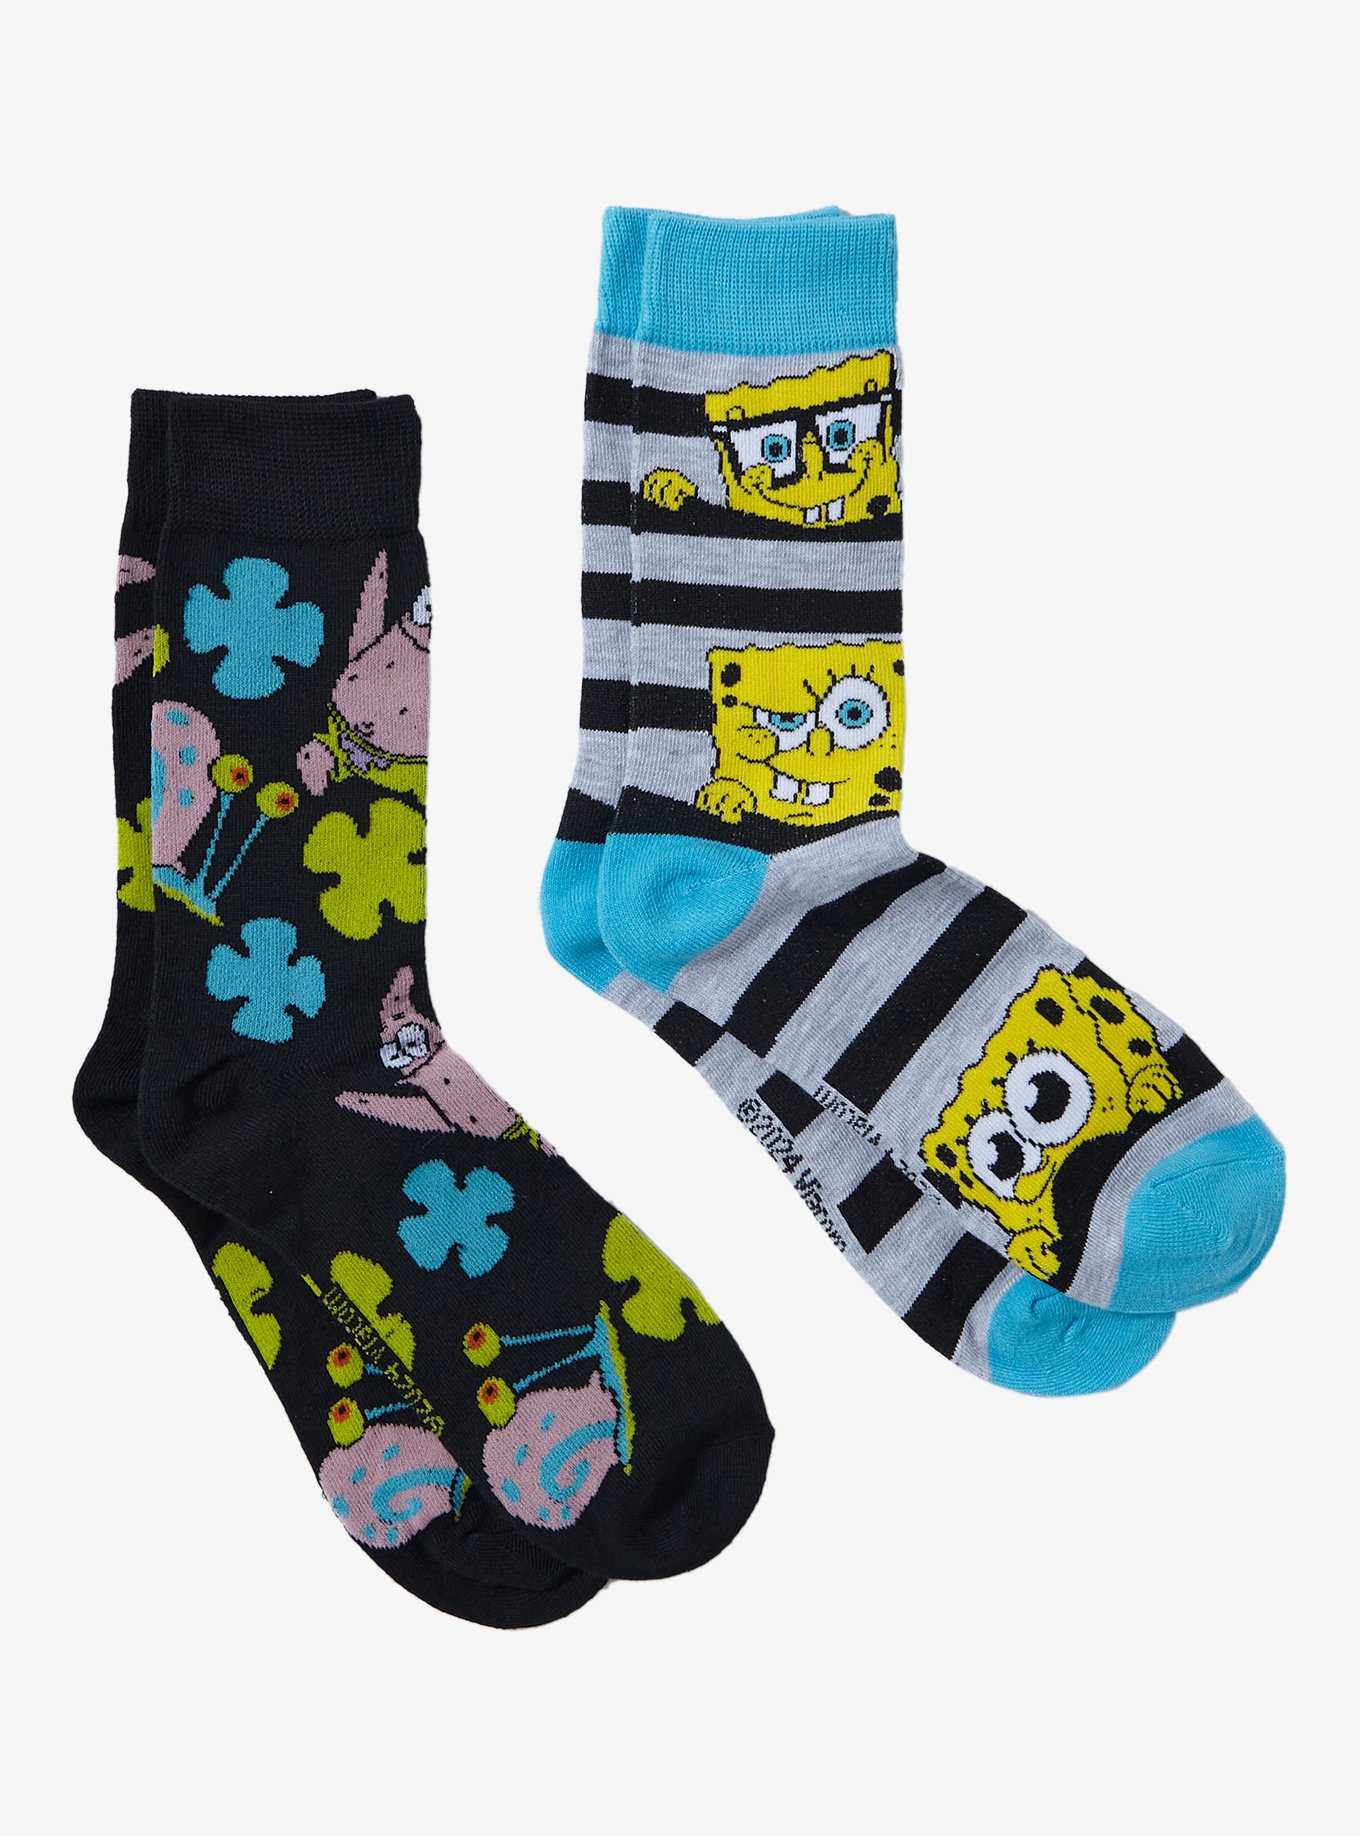 SpongeBob SquarePants Friends Crew Socks 2 Pair, , hi-res